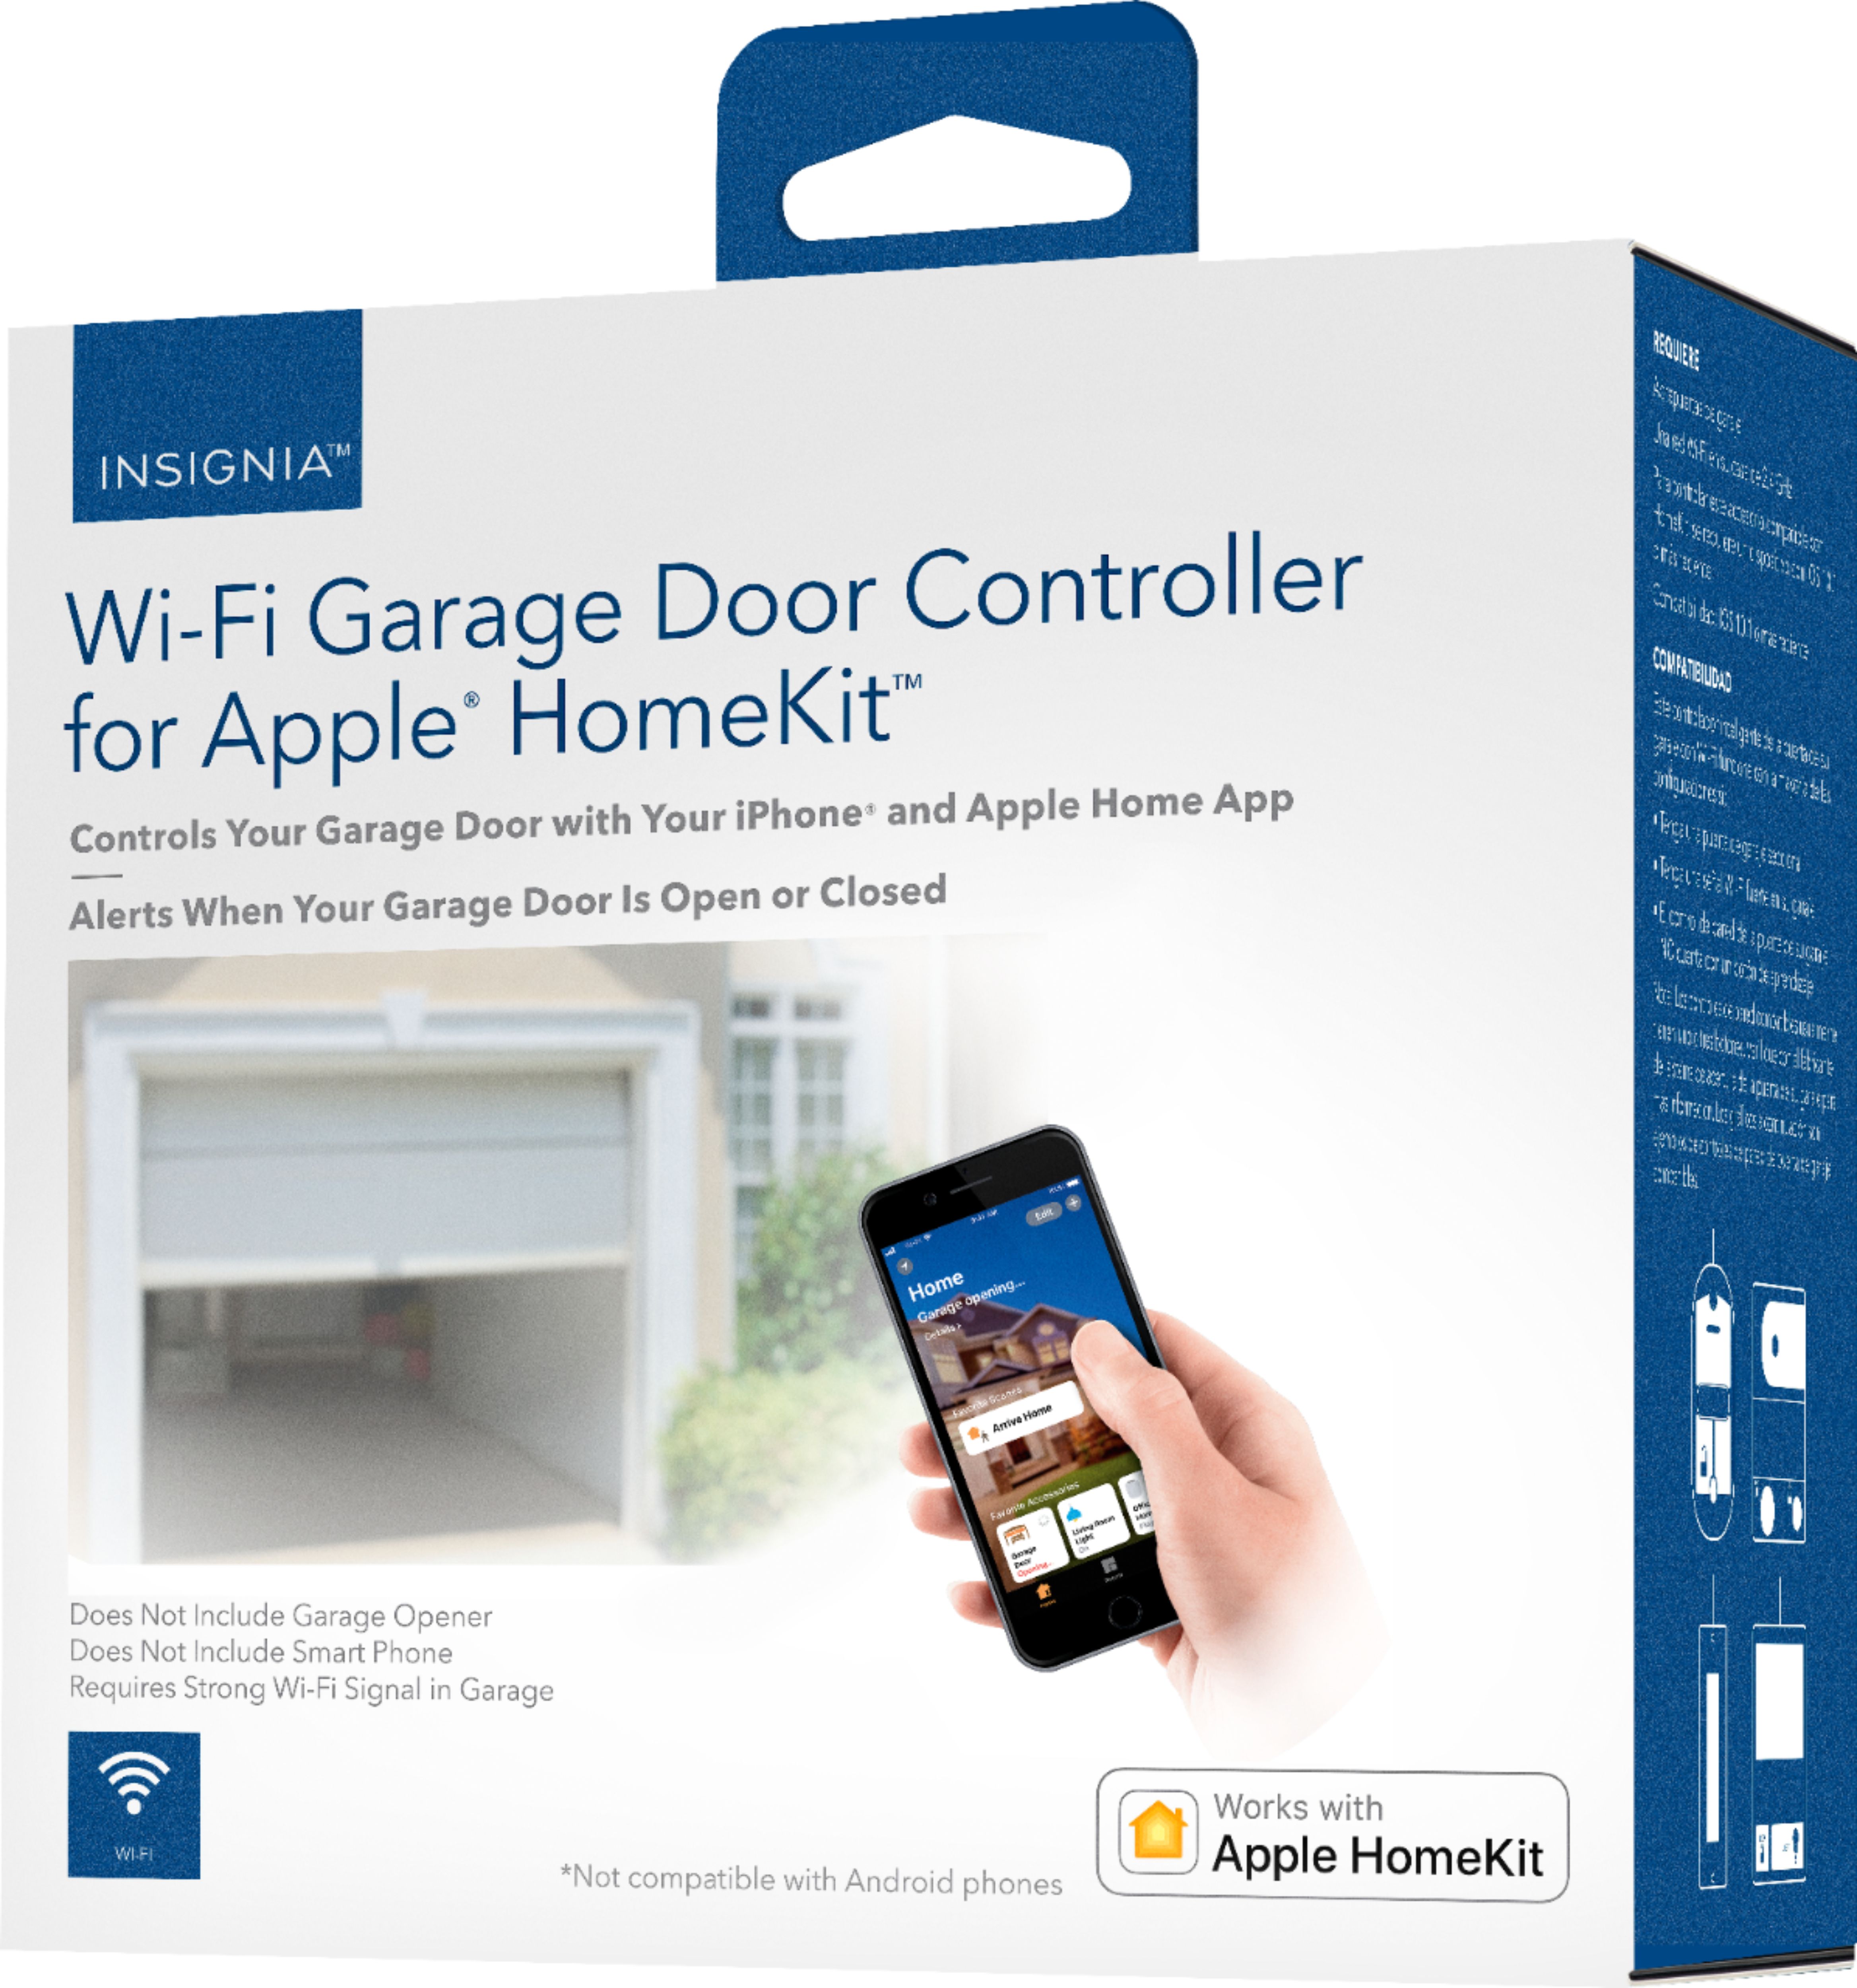 Best Homekit Smart Garage Door Opener Insignia Garage Door Controller Review Better Than Myq Youtube